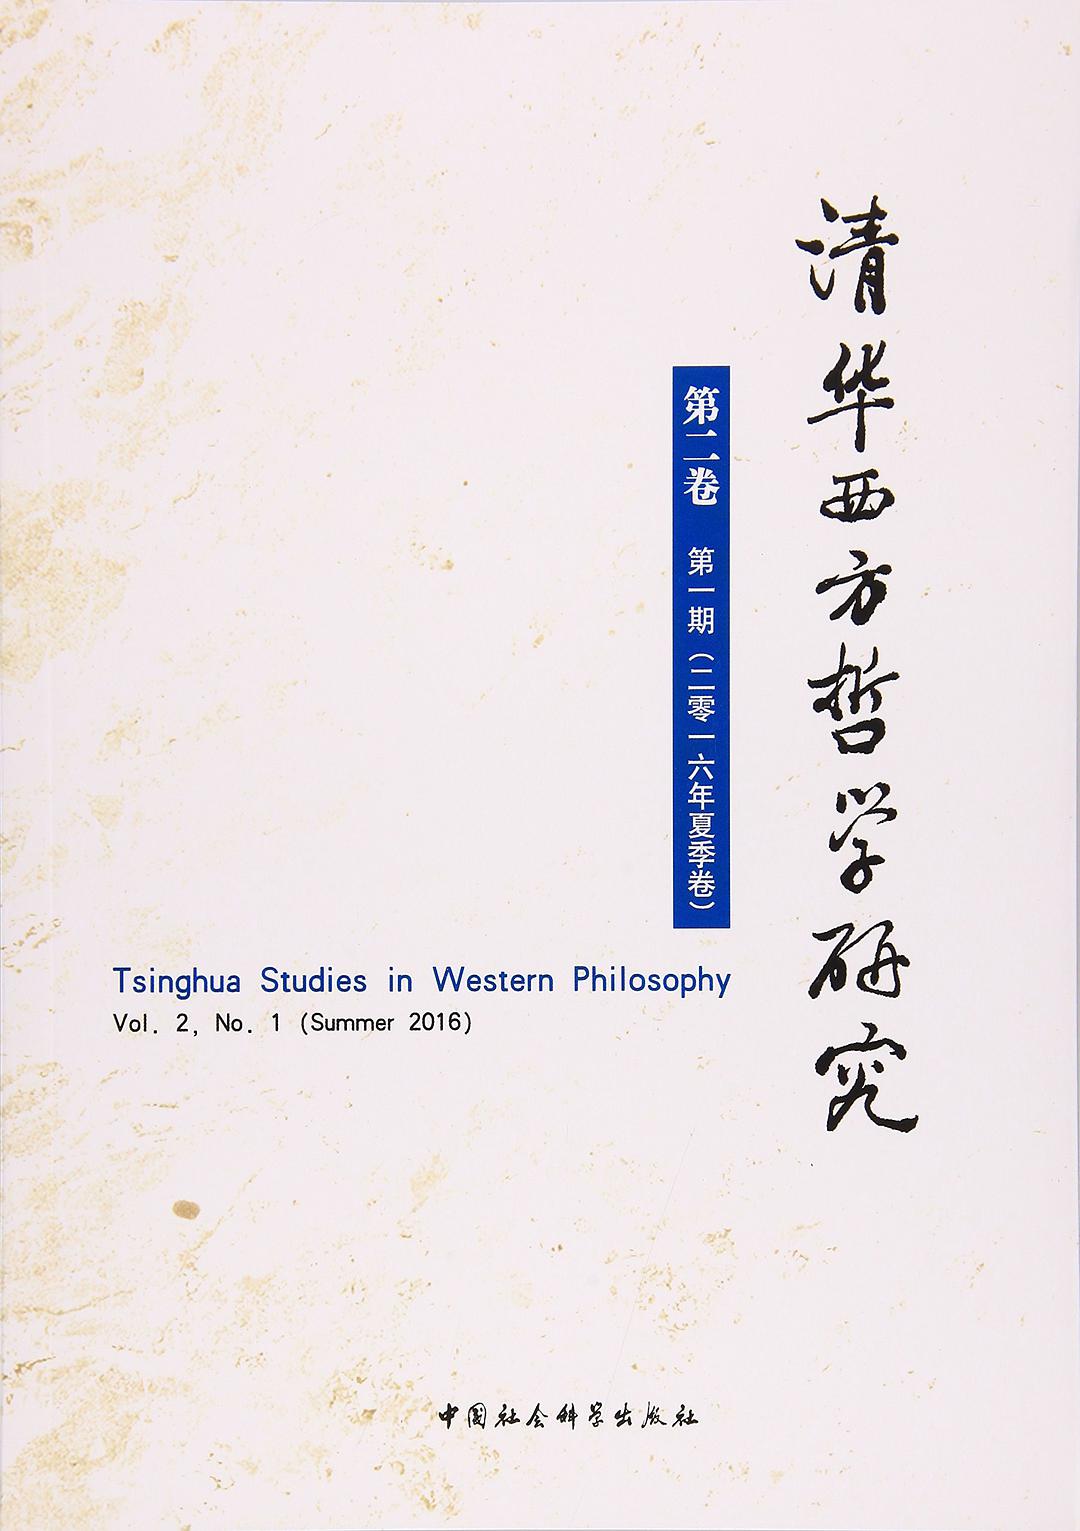 清华西方哲学研究 第二卷 第一期（二零一六年夏季卷） Vol. 2, No. 1 (Summer 2016)